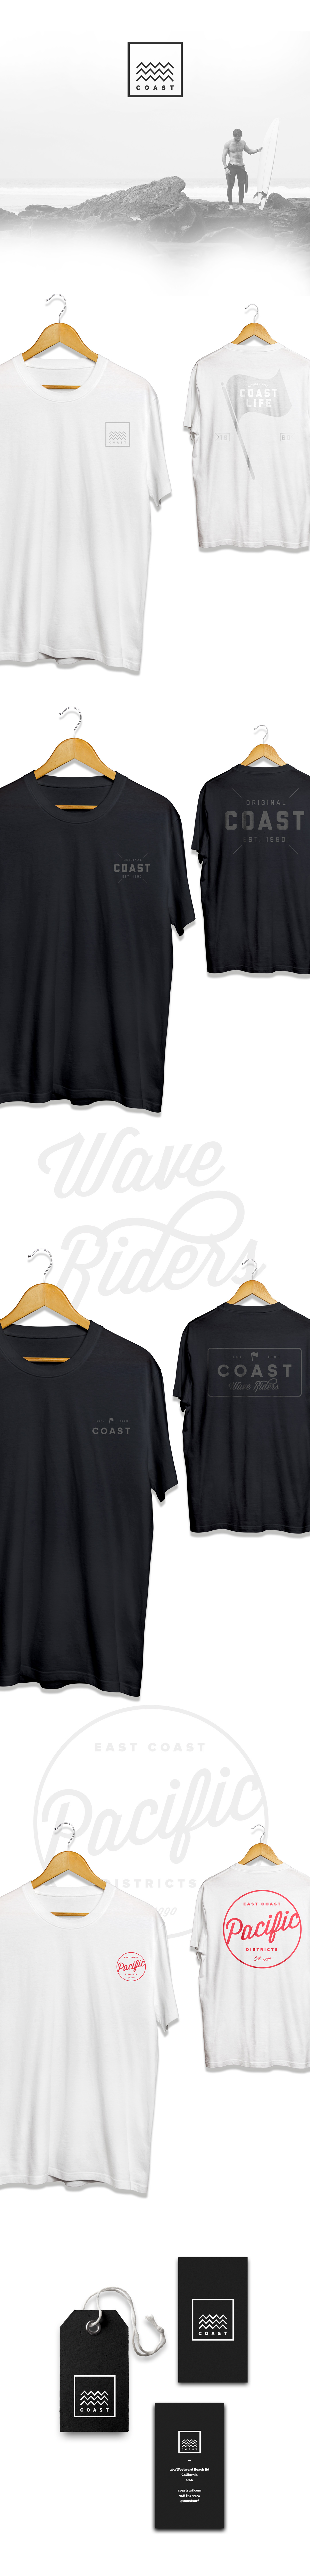 t-shirt Surf California tee beach Coast apparel Clothing Menswear Outerwear Classic brixton carhartt logo brand